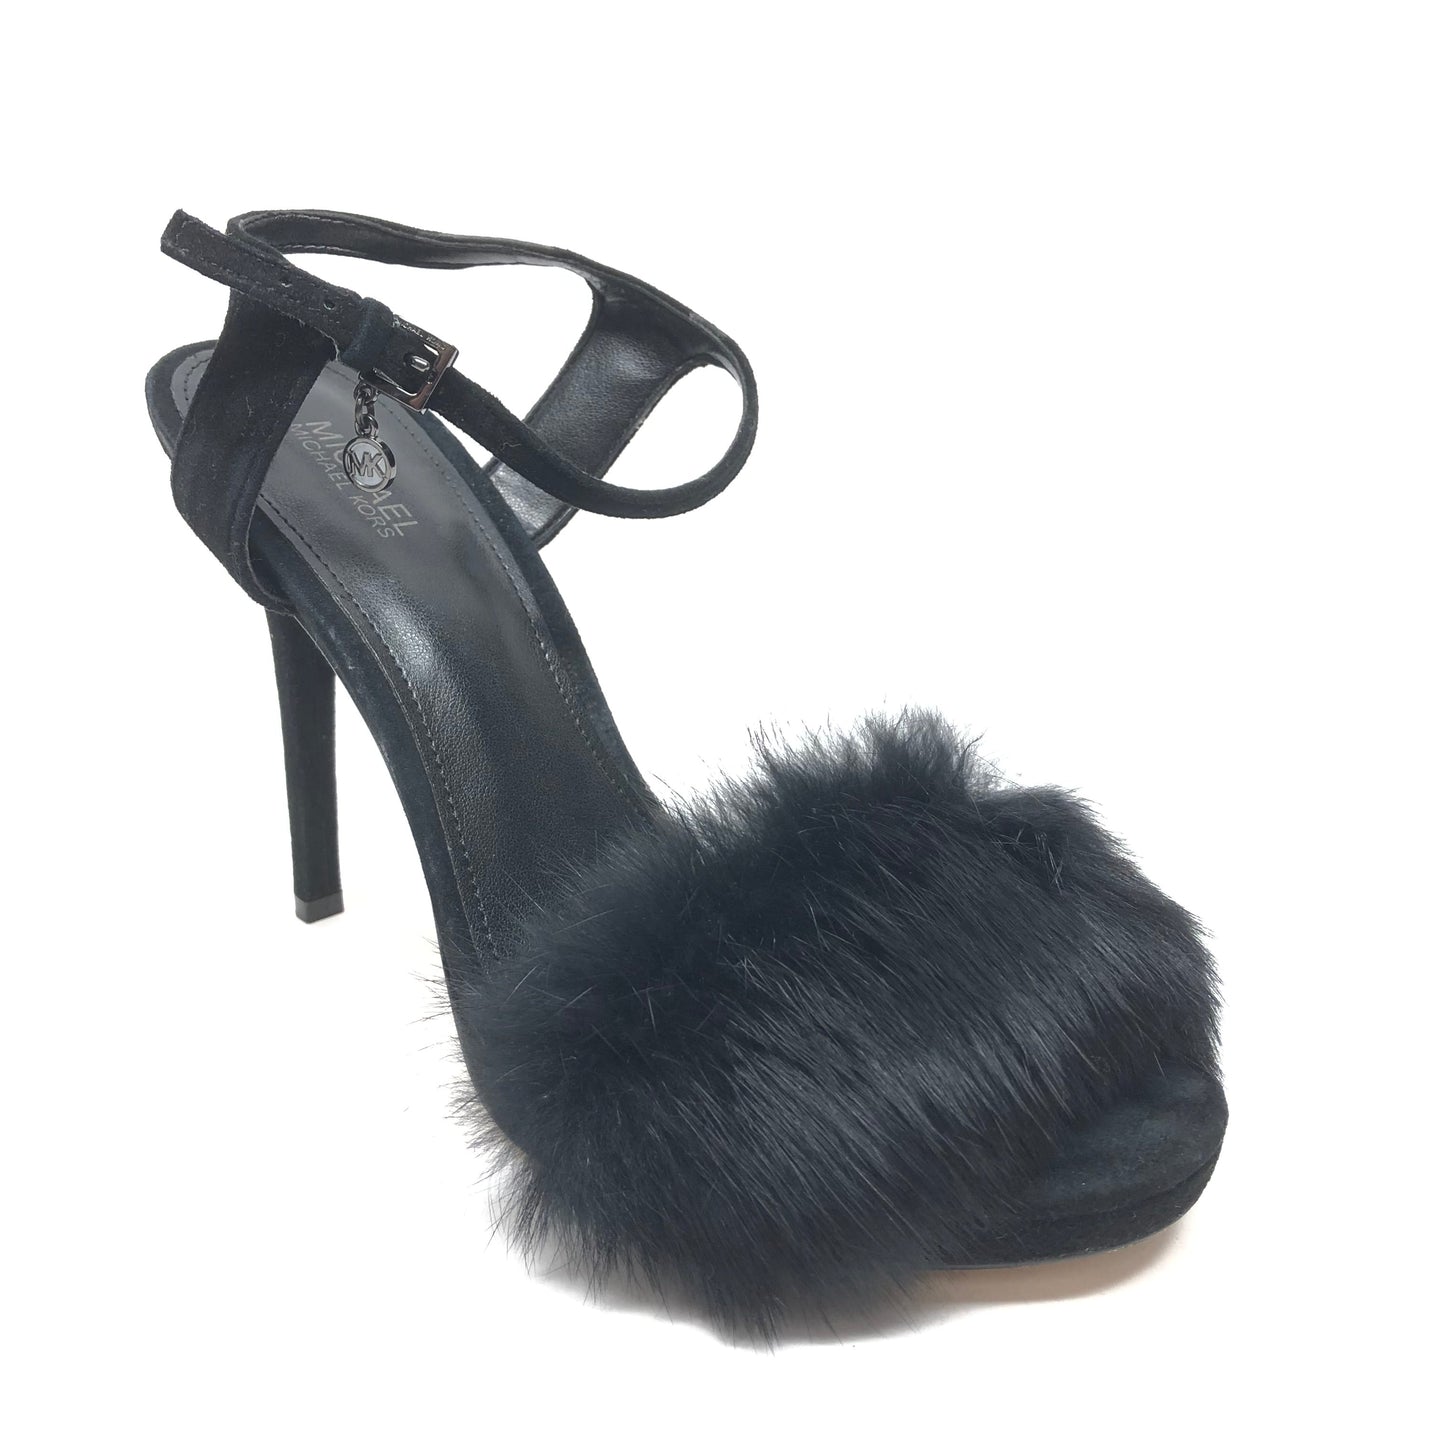 Black Shoes Heels Stiletto Michael Kors, Size 7